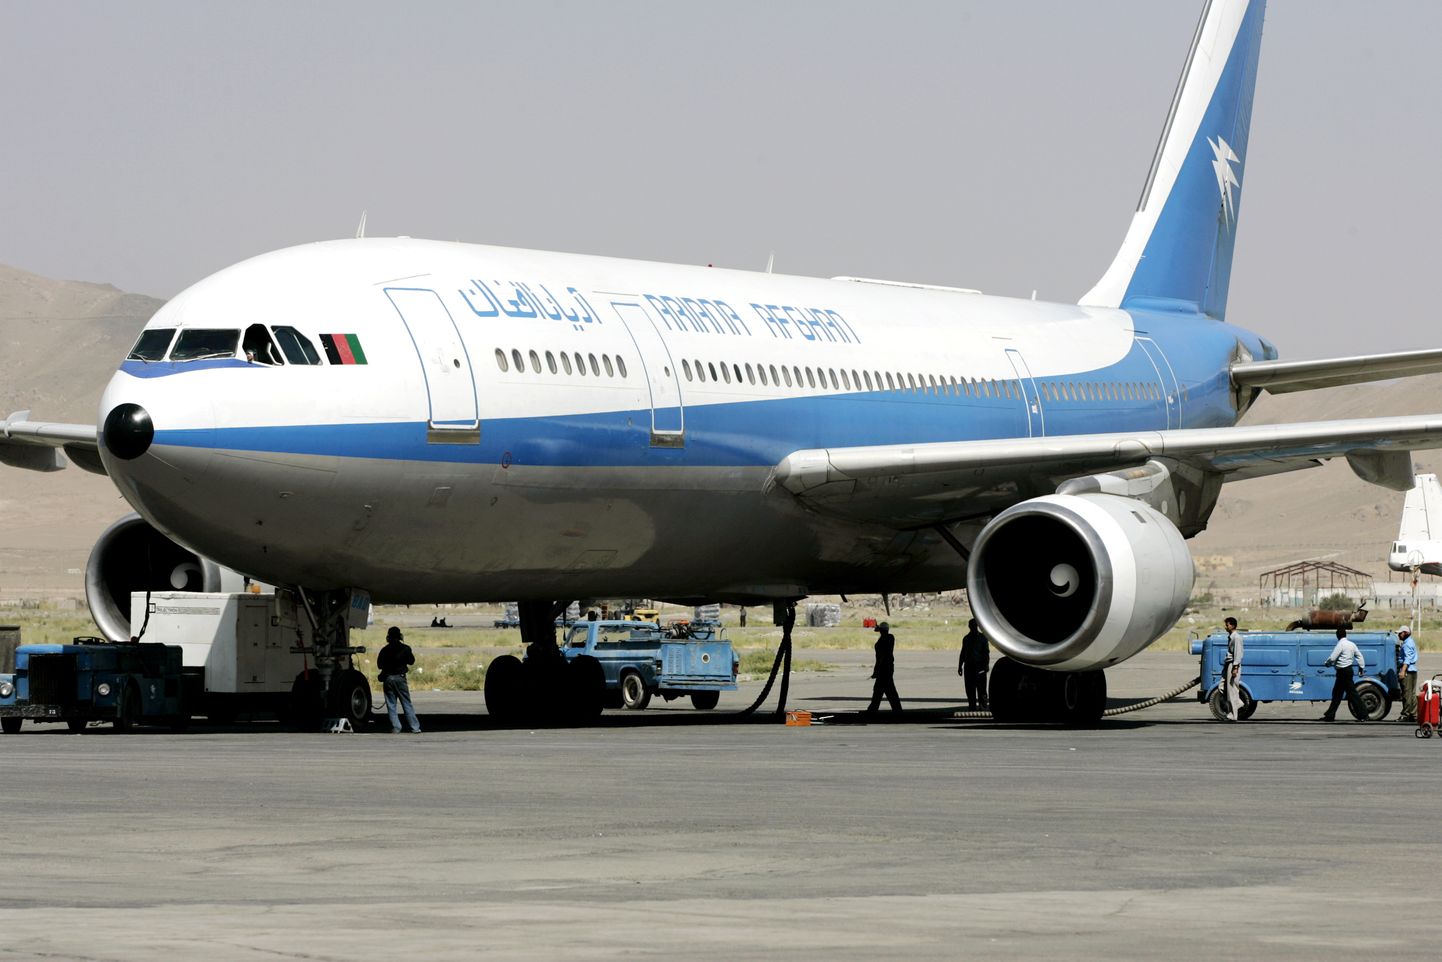 Pilt on illustreeriv: Ariana Airlinesi lennuk 2004. aastal Kabulis.